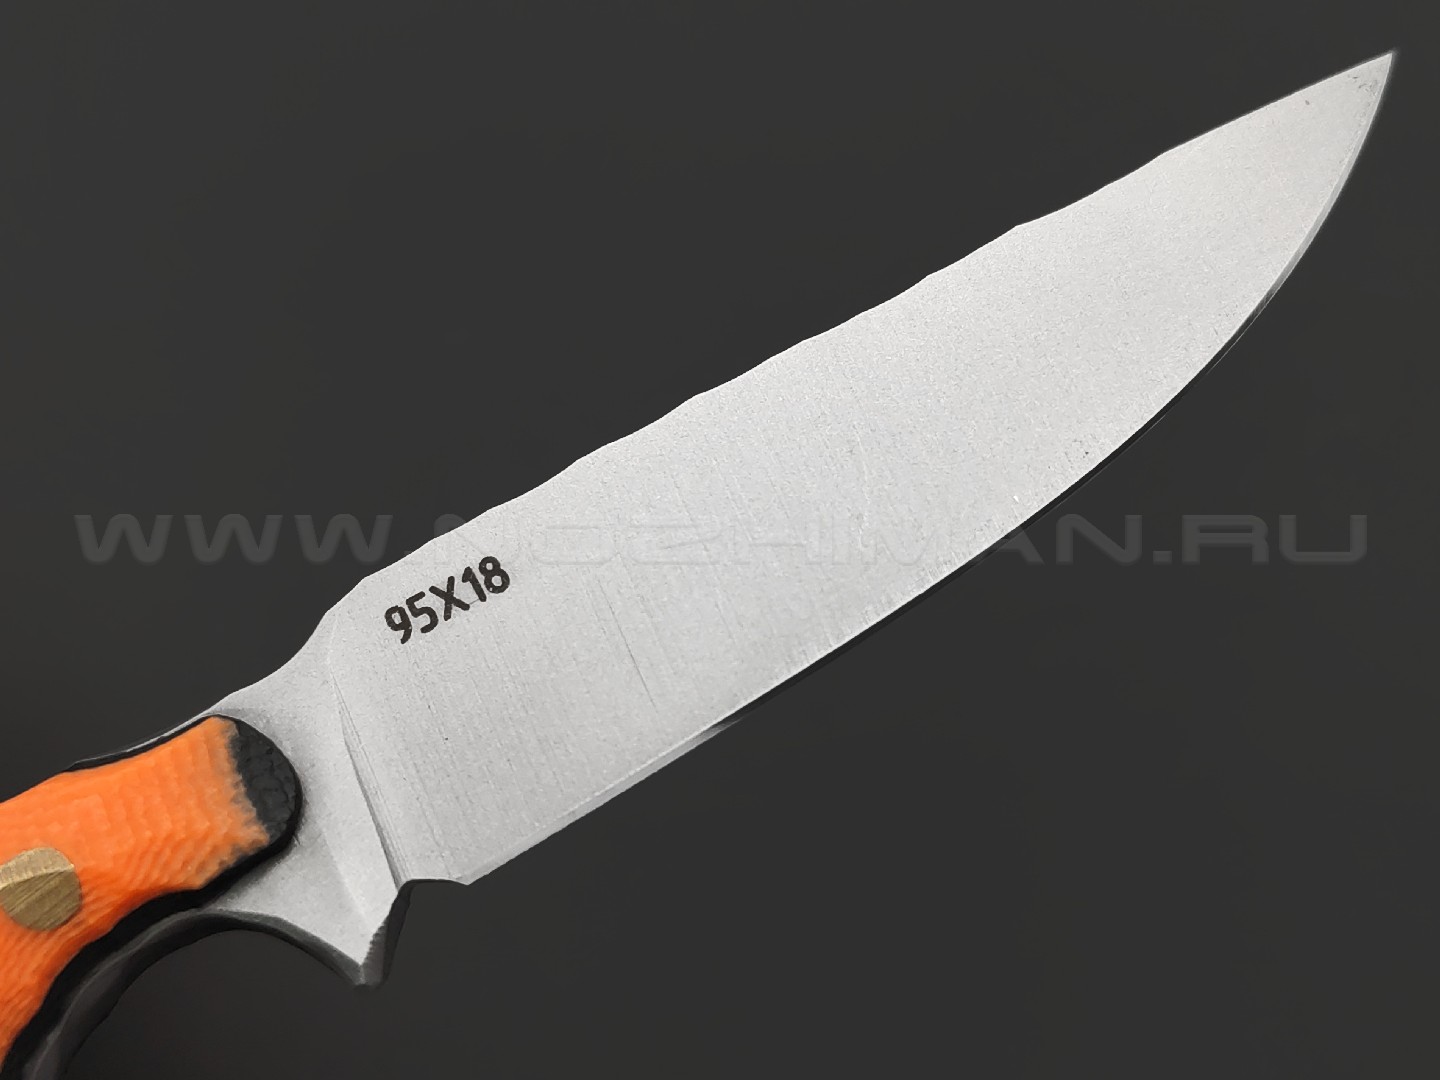 Андрей Кулаков нож KUL029 сталь 95Х18, рукоять G10 orange